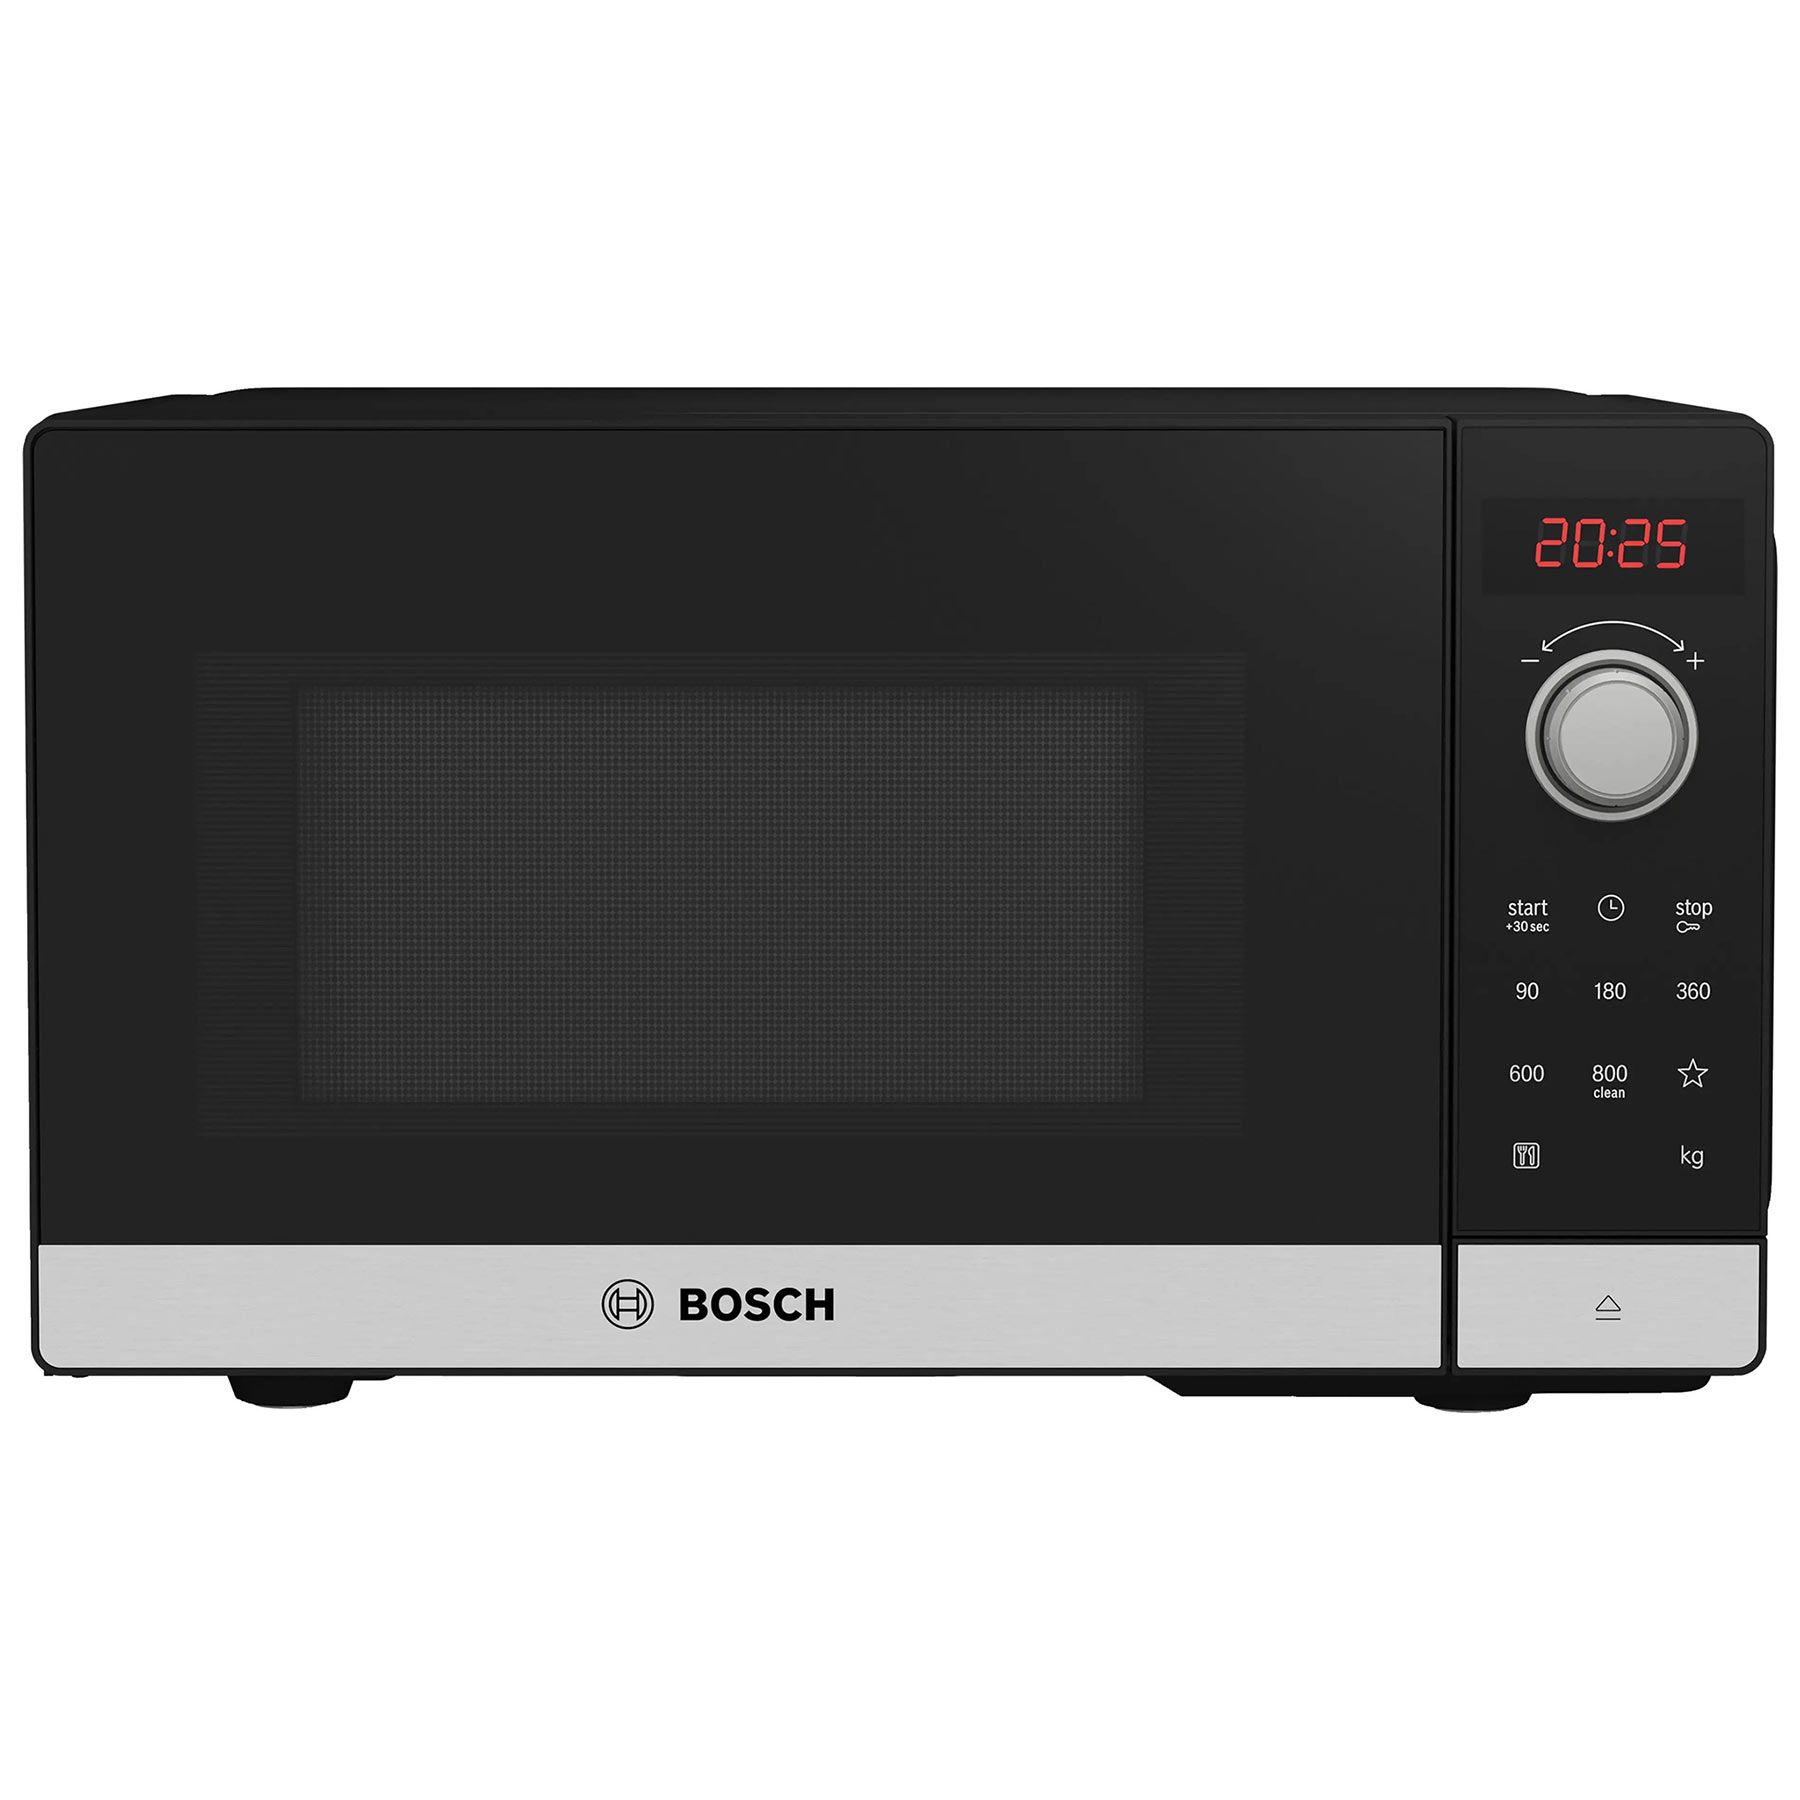 Bosch FFL023MS2B Series 2 Solo Microwave Oven in St Steel 20L 800W